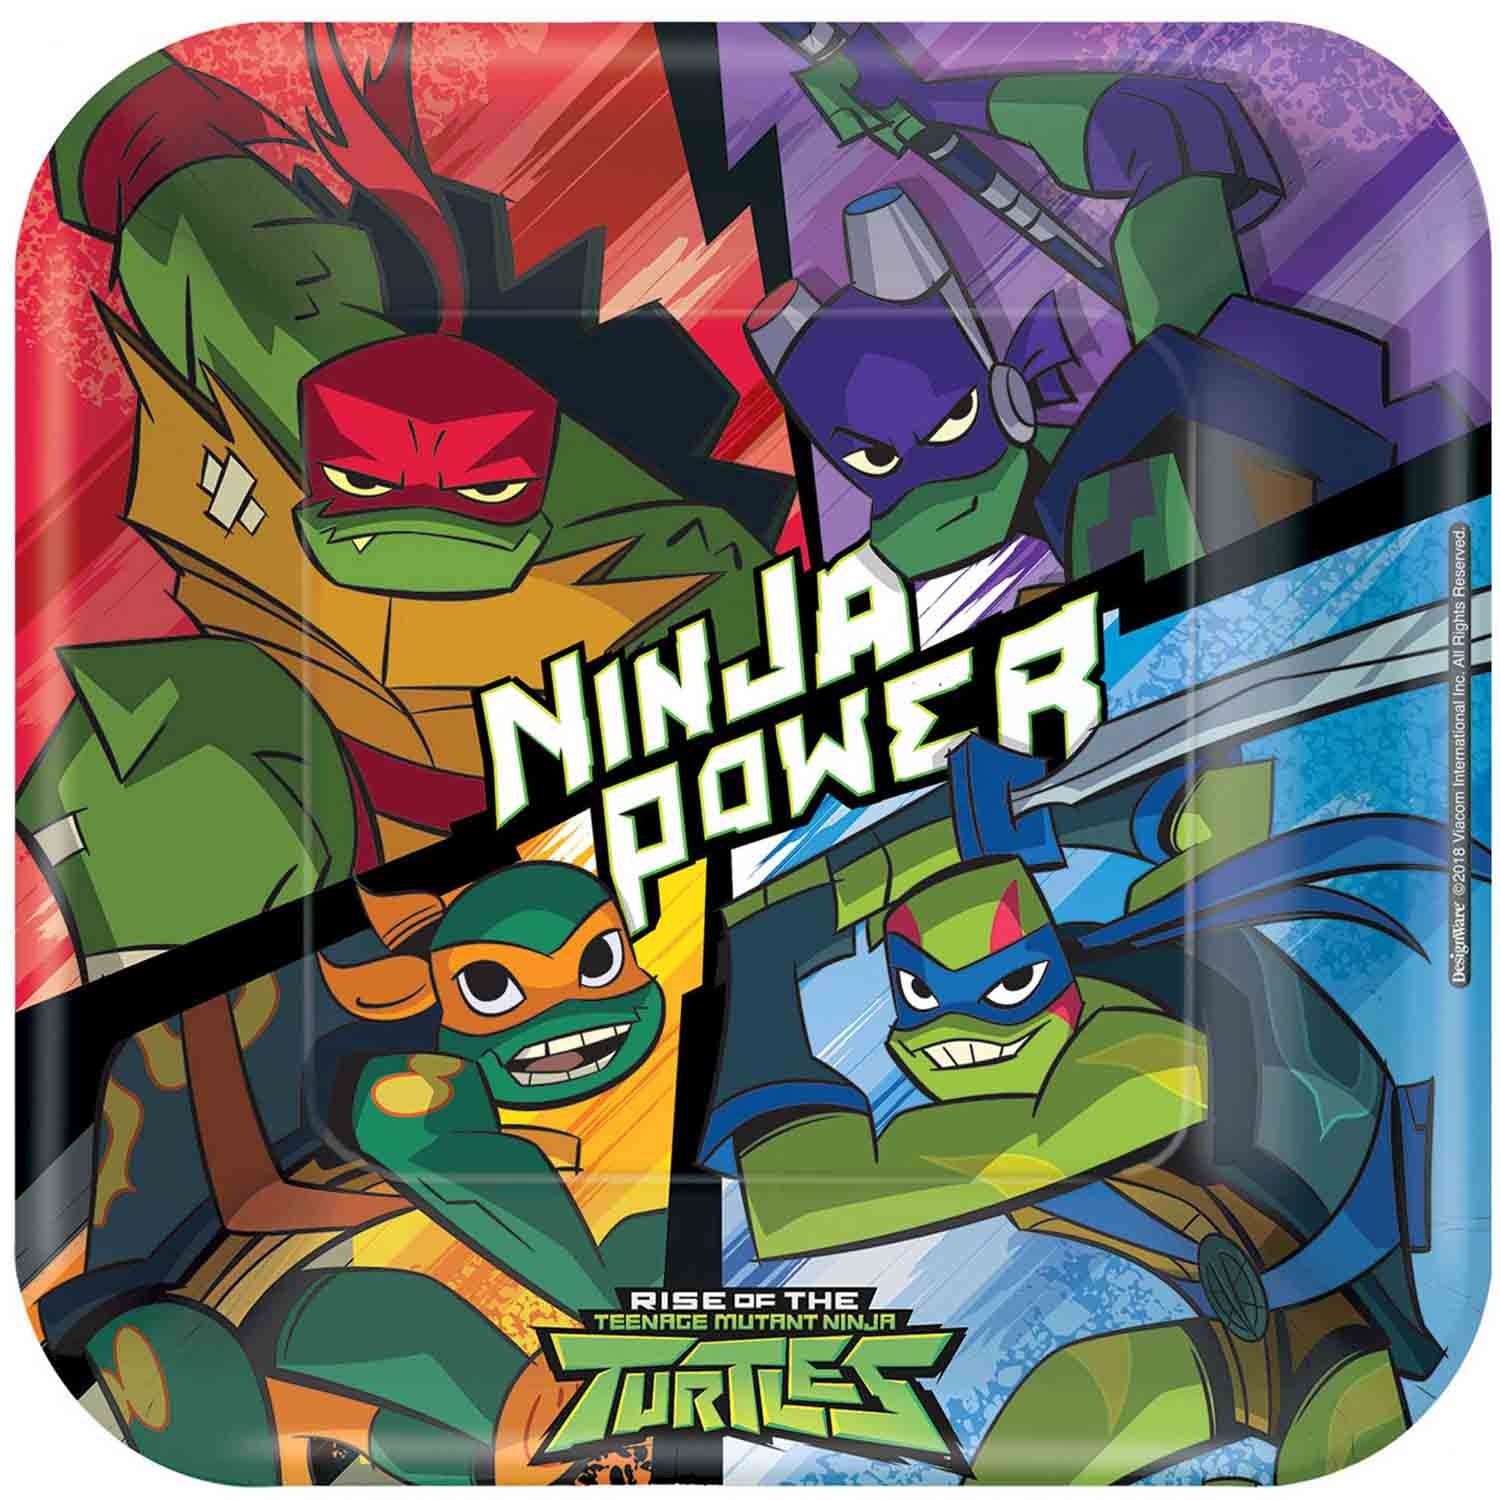 Rise of the Teenage Mutant Ninja Turtles - 23cm Square Plates